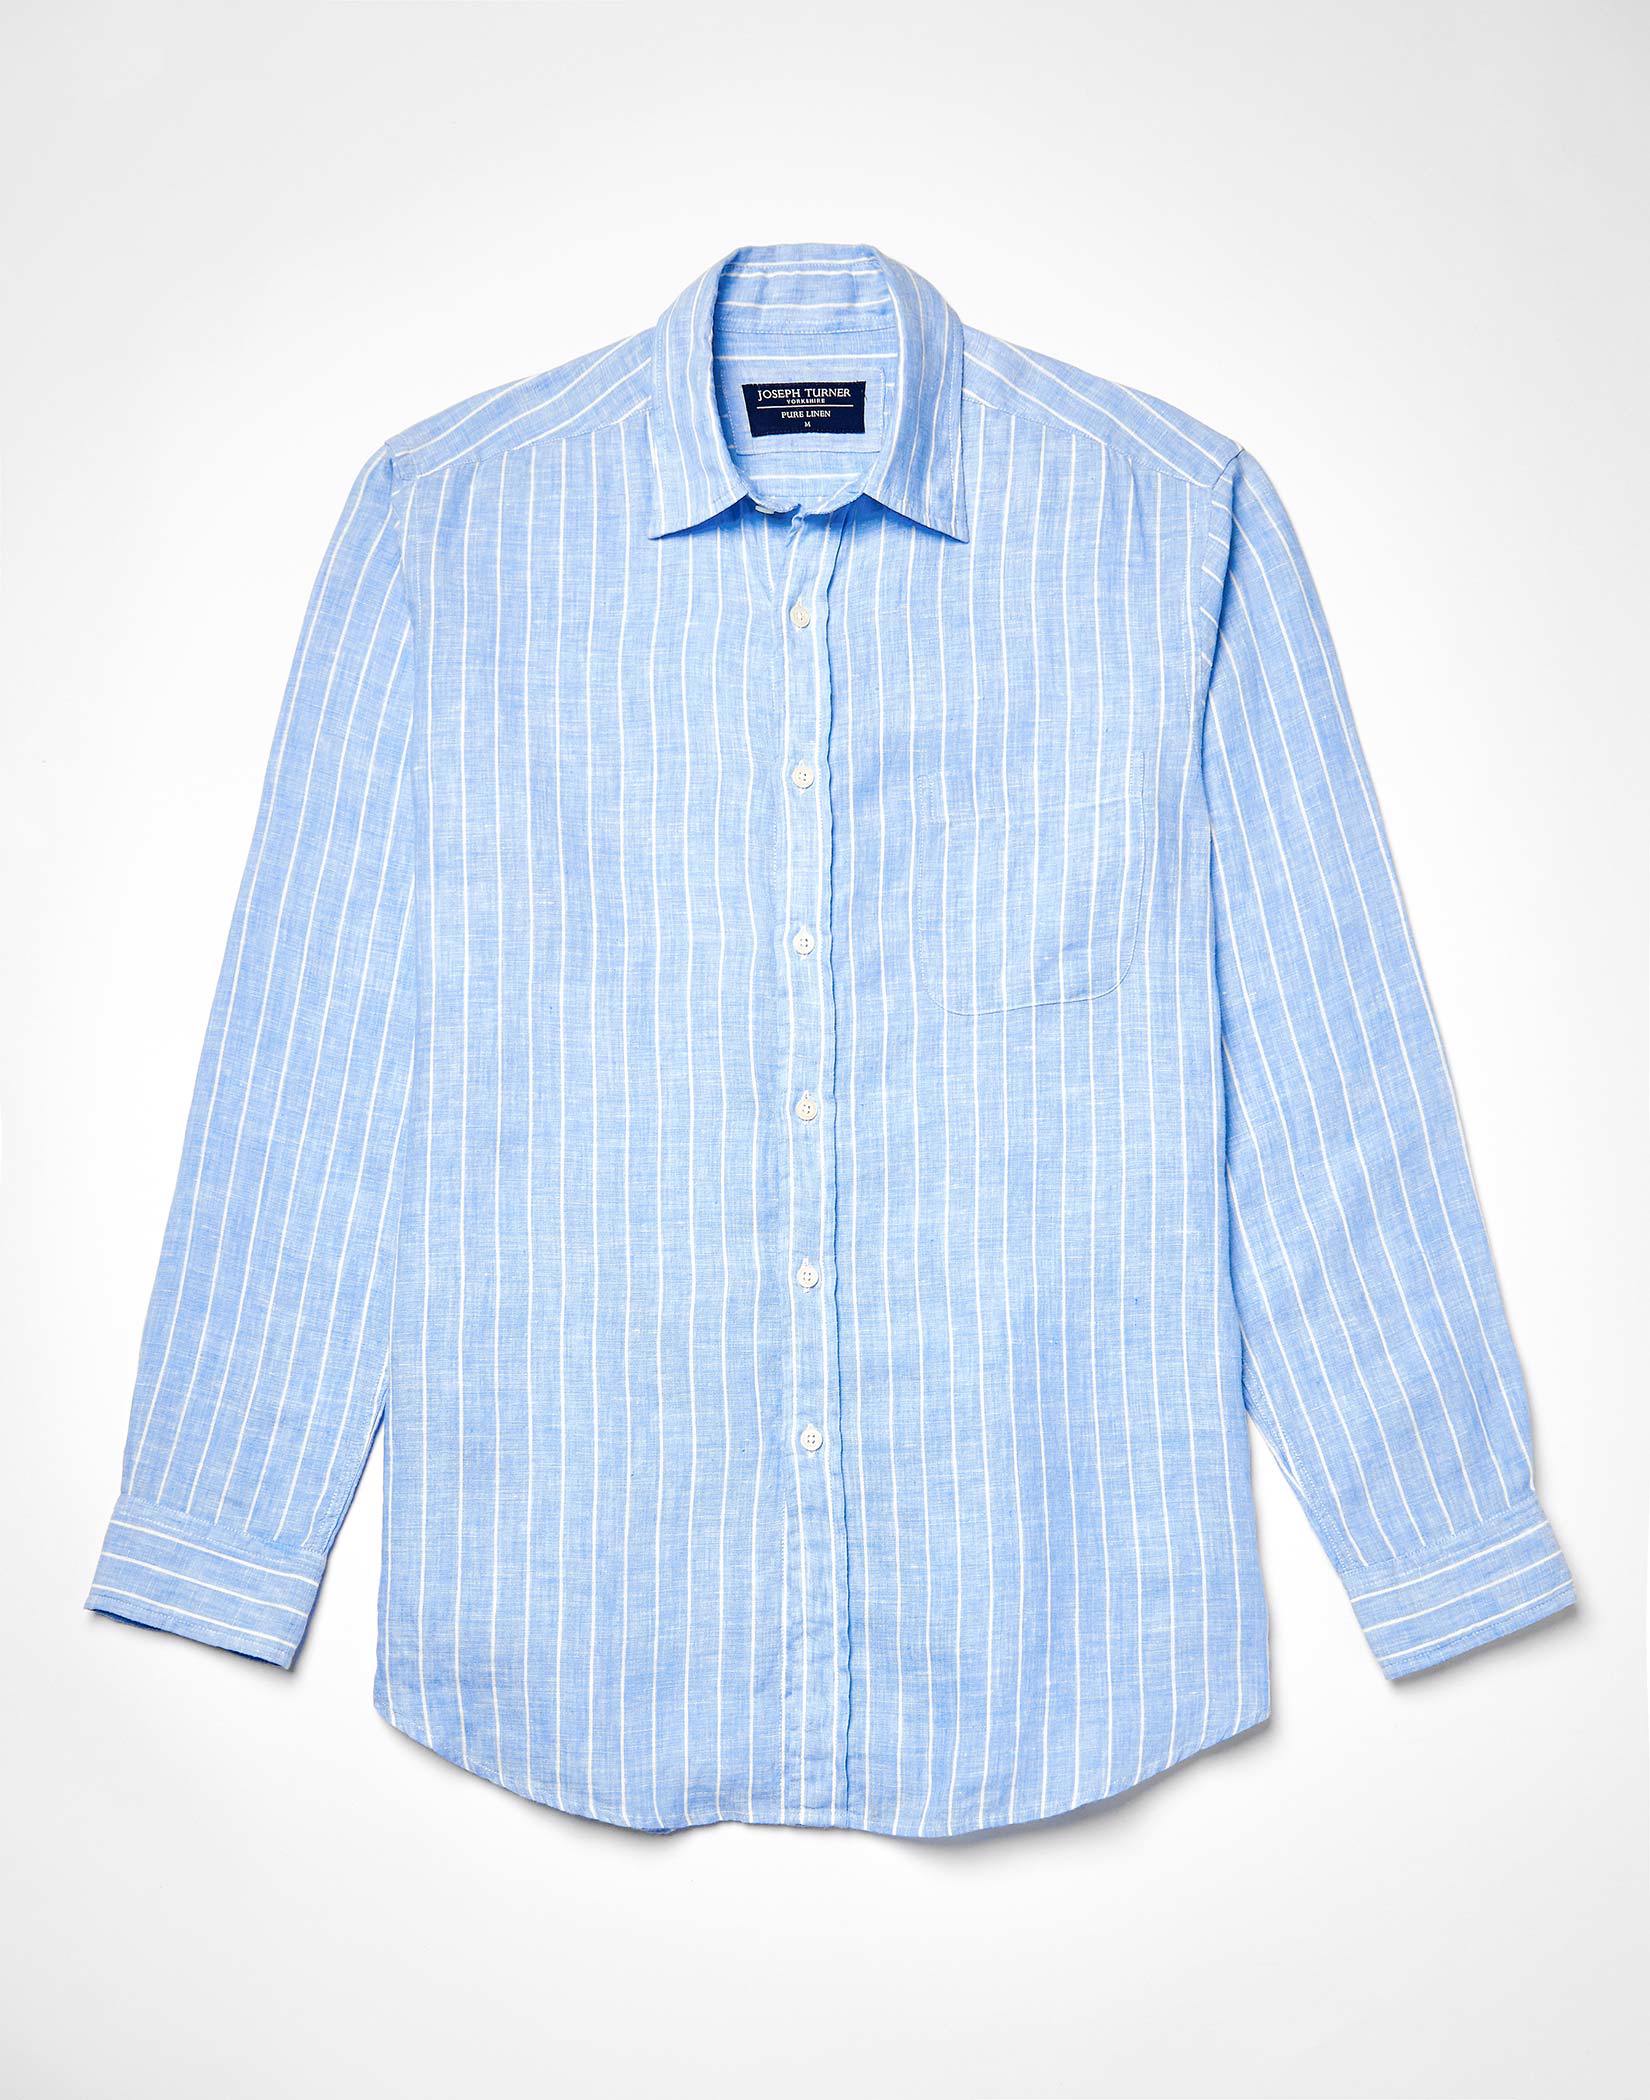 Linen Shirt Long Sleeve - Blue/White Stripe